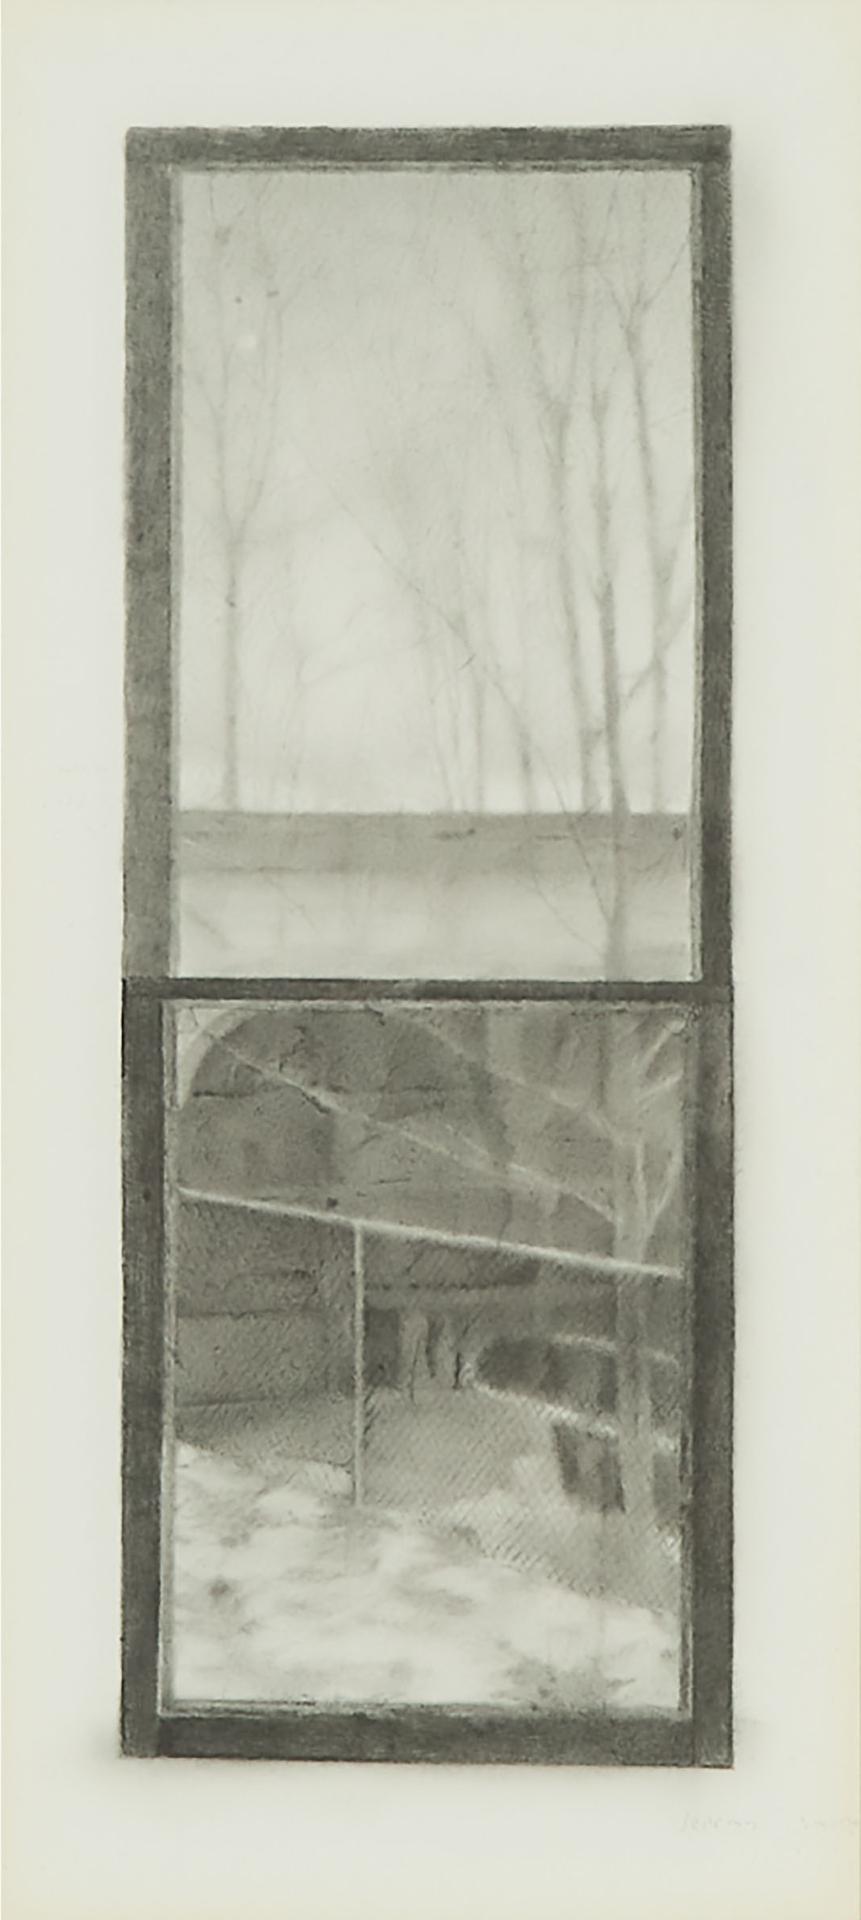 Jeremy Lawrence Smith (1946) - Study For Window, 1988